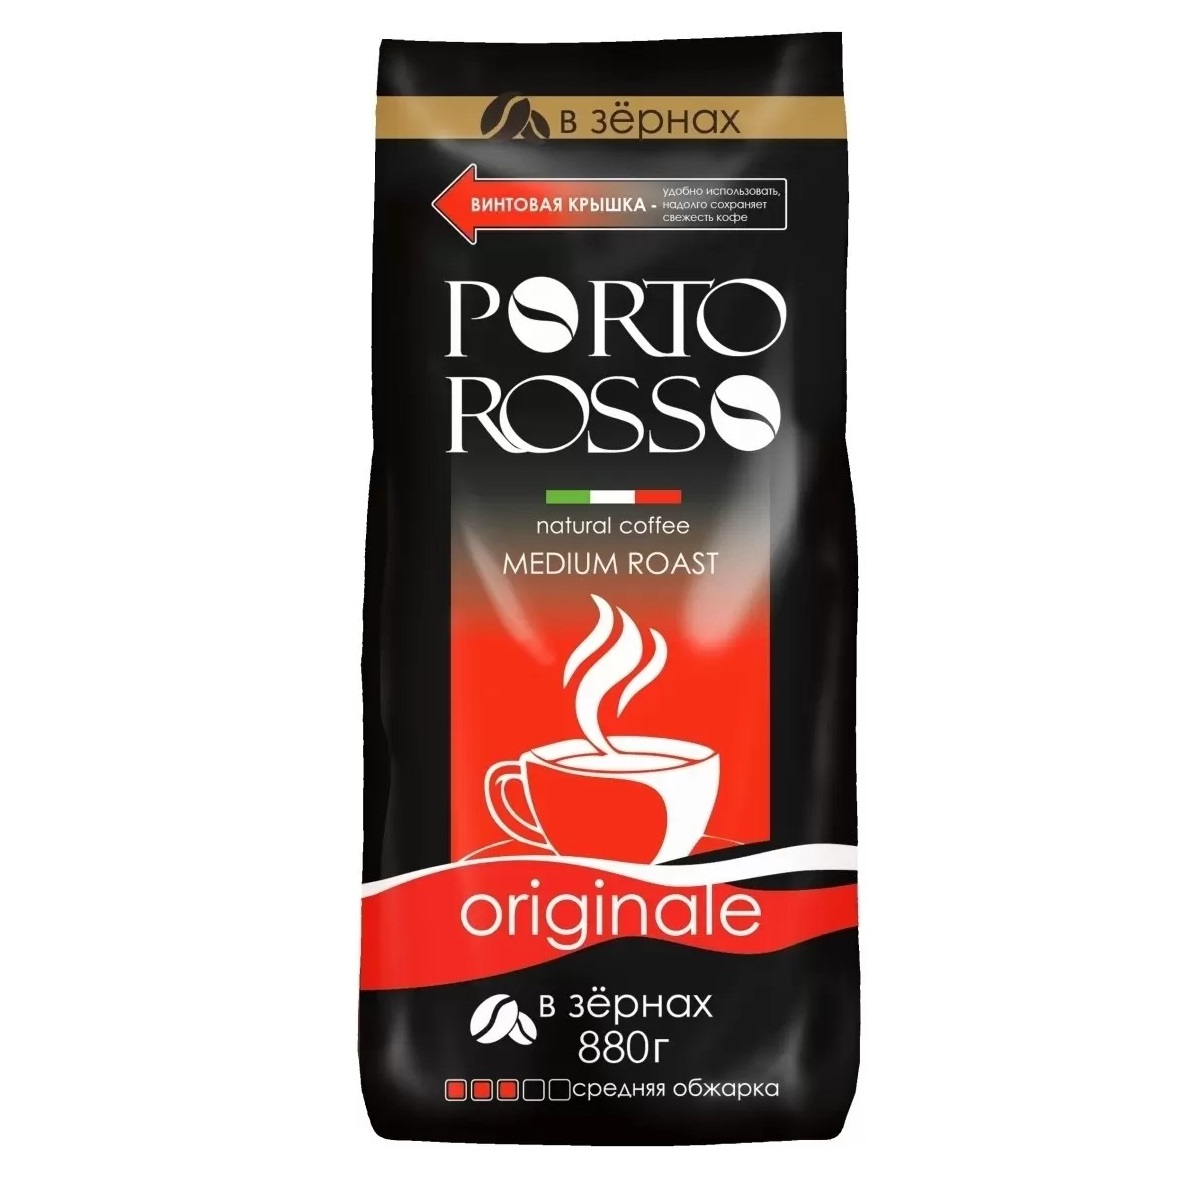 Кофе Porto Rosso в зернах Originale 880г кофе в зернах porto rosso speciale 220 г